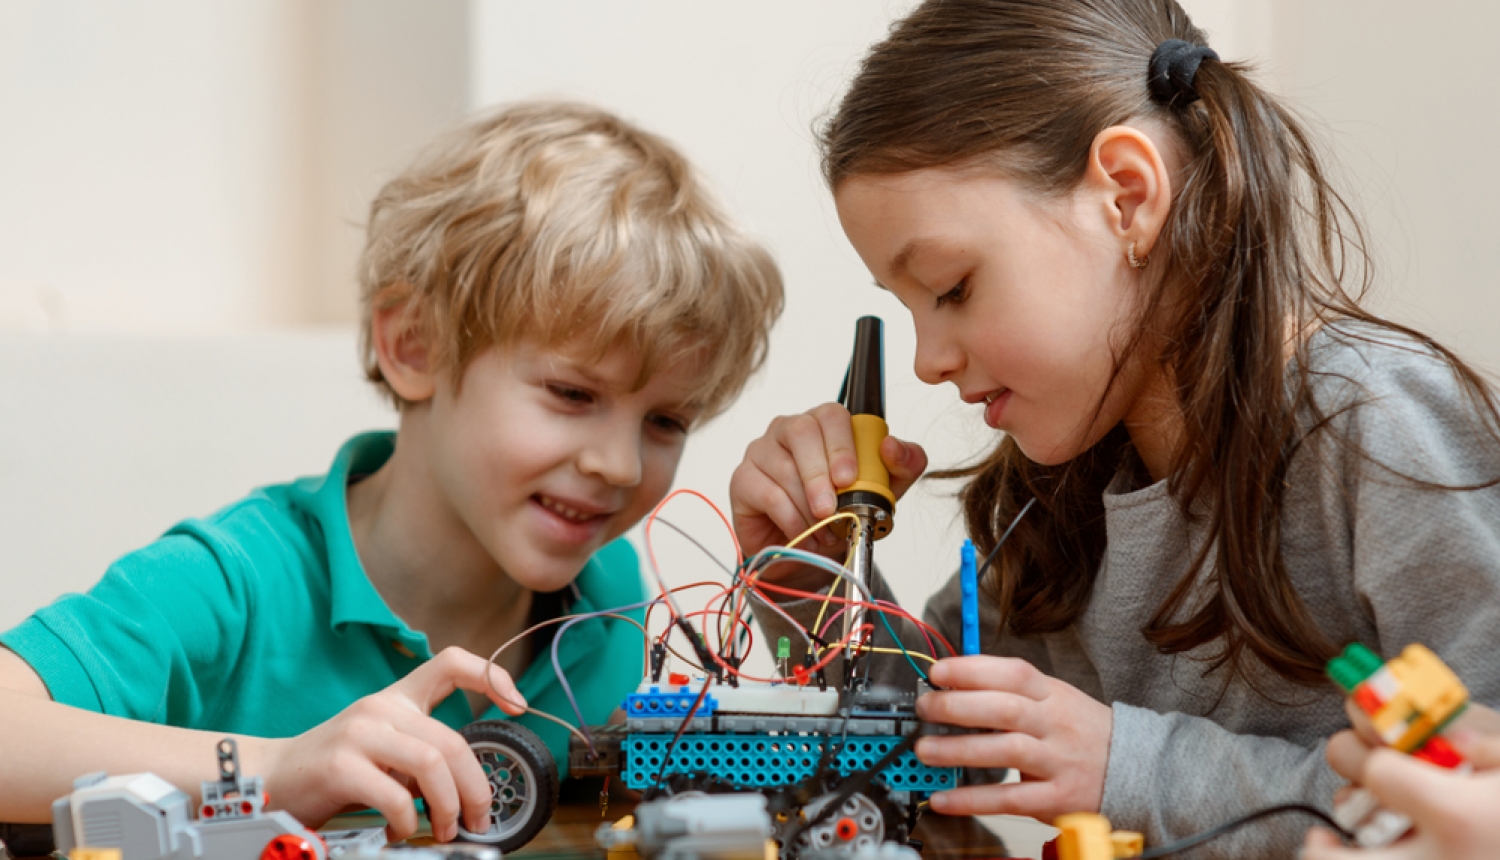 Zēns un meitene darbojas ar tehnoloģijām - būvē auto, kuram pieslēgti vadi